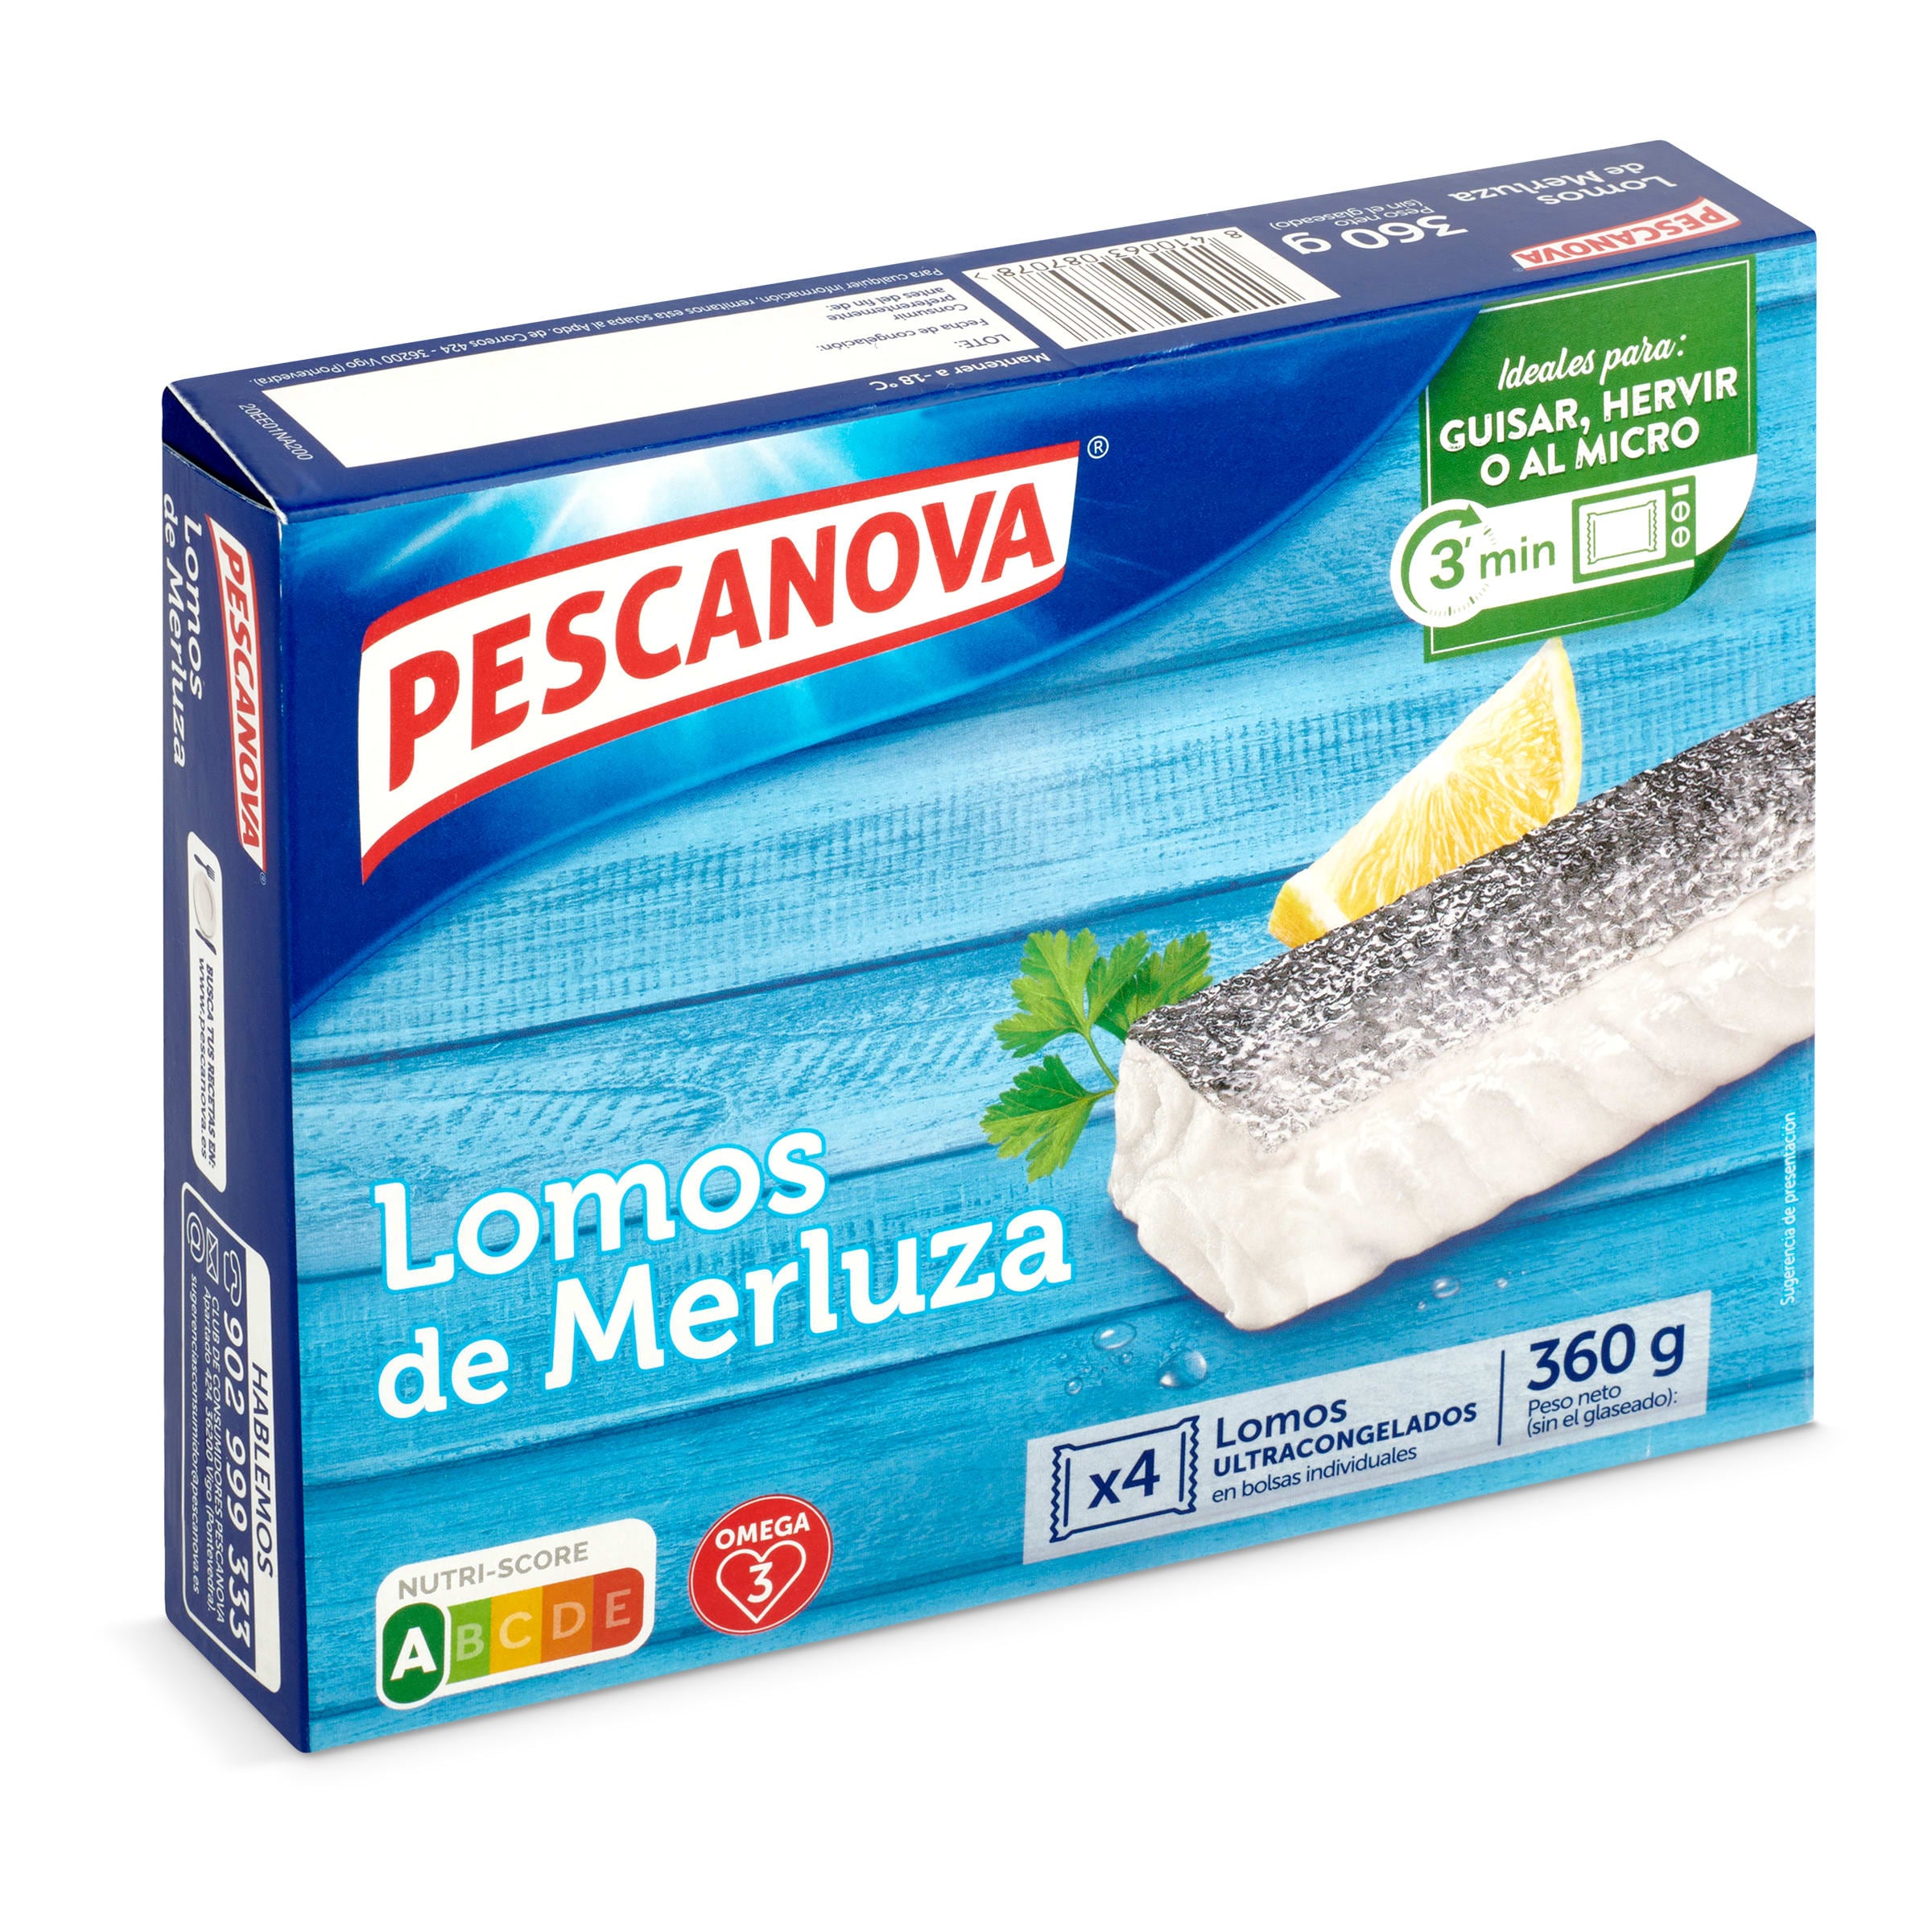 Lomos de merluza PESCANOVA BOLSA 360 GR - Supermercados DIA